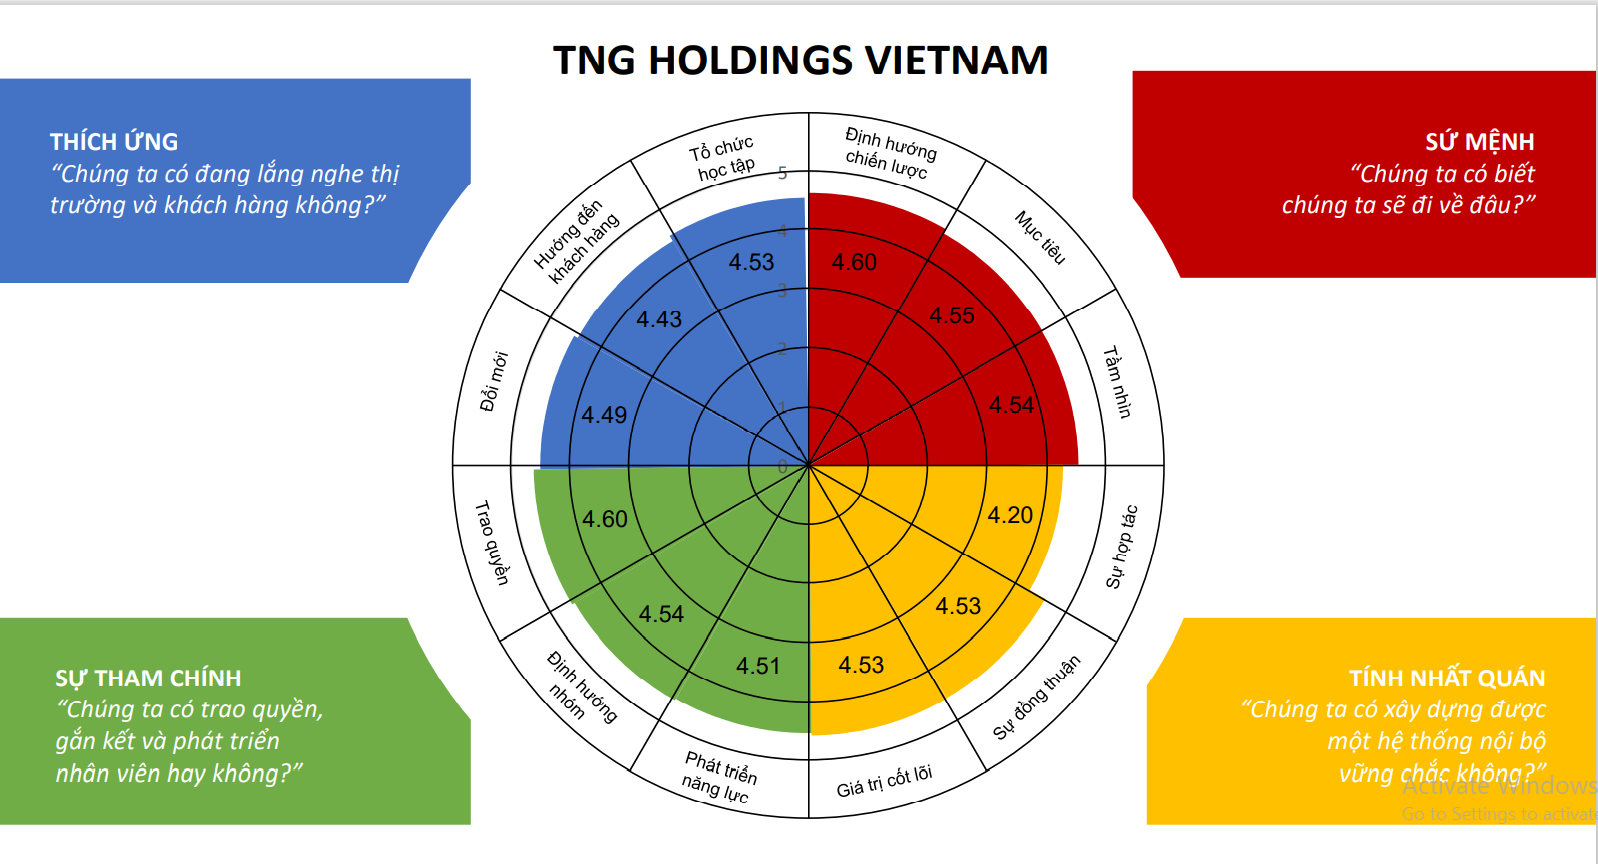 Kết quả đánh giá văn hóa doanh nghiệp theo mô hình Denison của TNG Holdings Vietnam với sự cân bằng cao giữa các tiêu chí